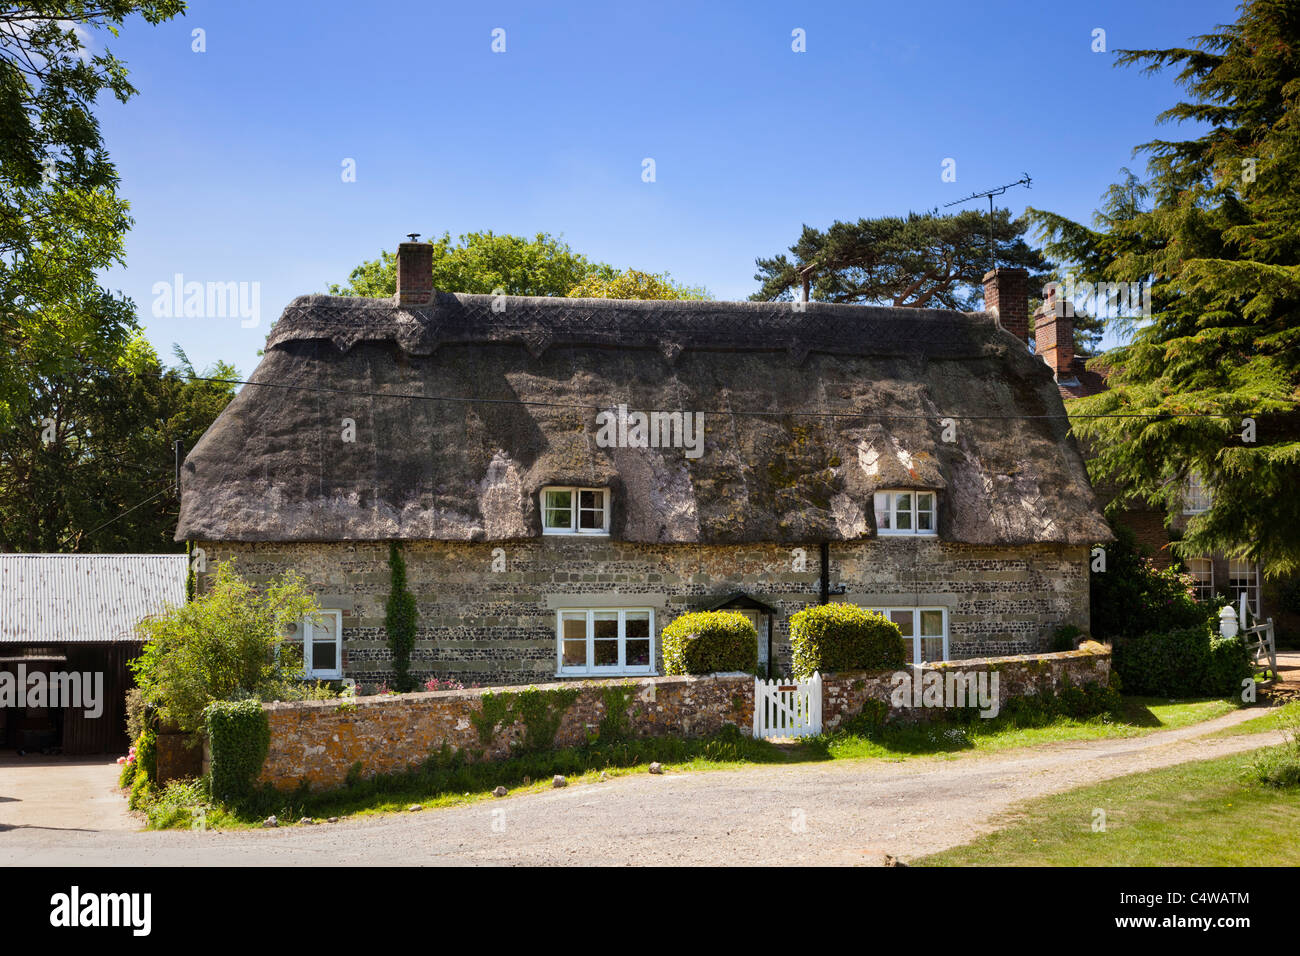 Bella tradizione antica casa di campagna su una soleggiata giornata estiva nel pittoresco villaggio di Ashmore, Dorset, England, Regno Unito Foto Stock